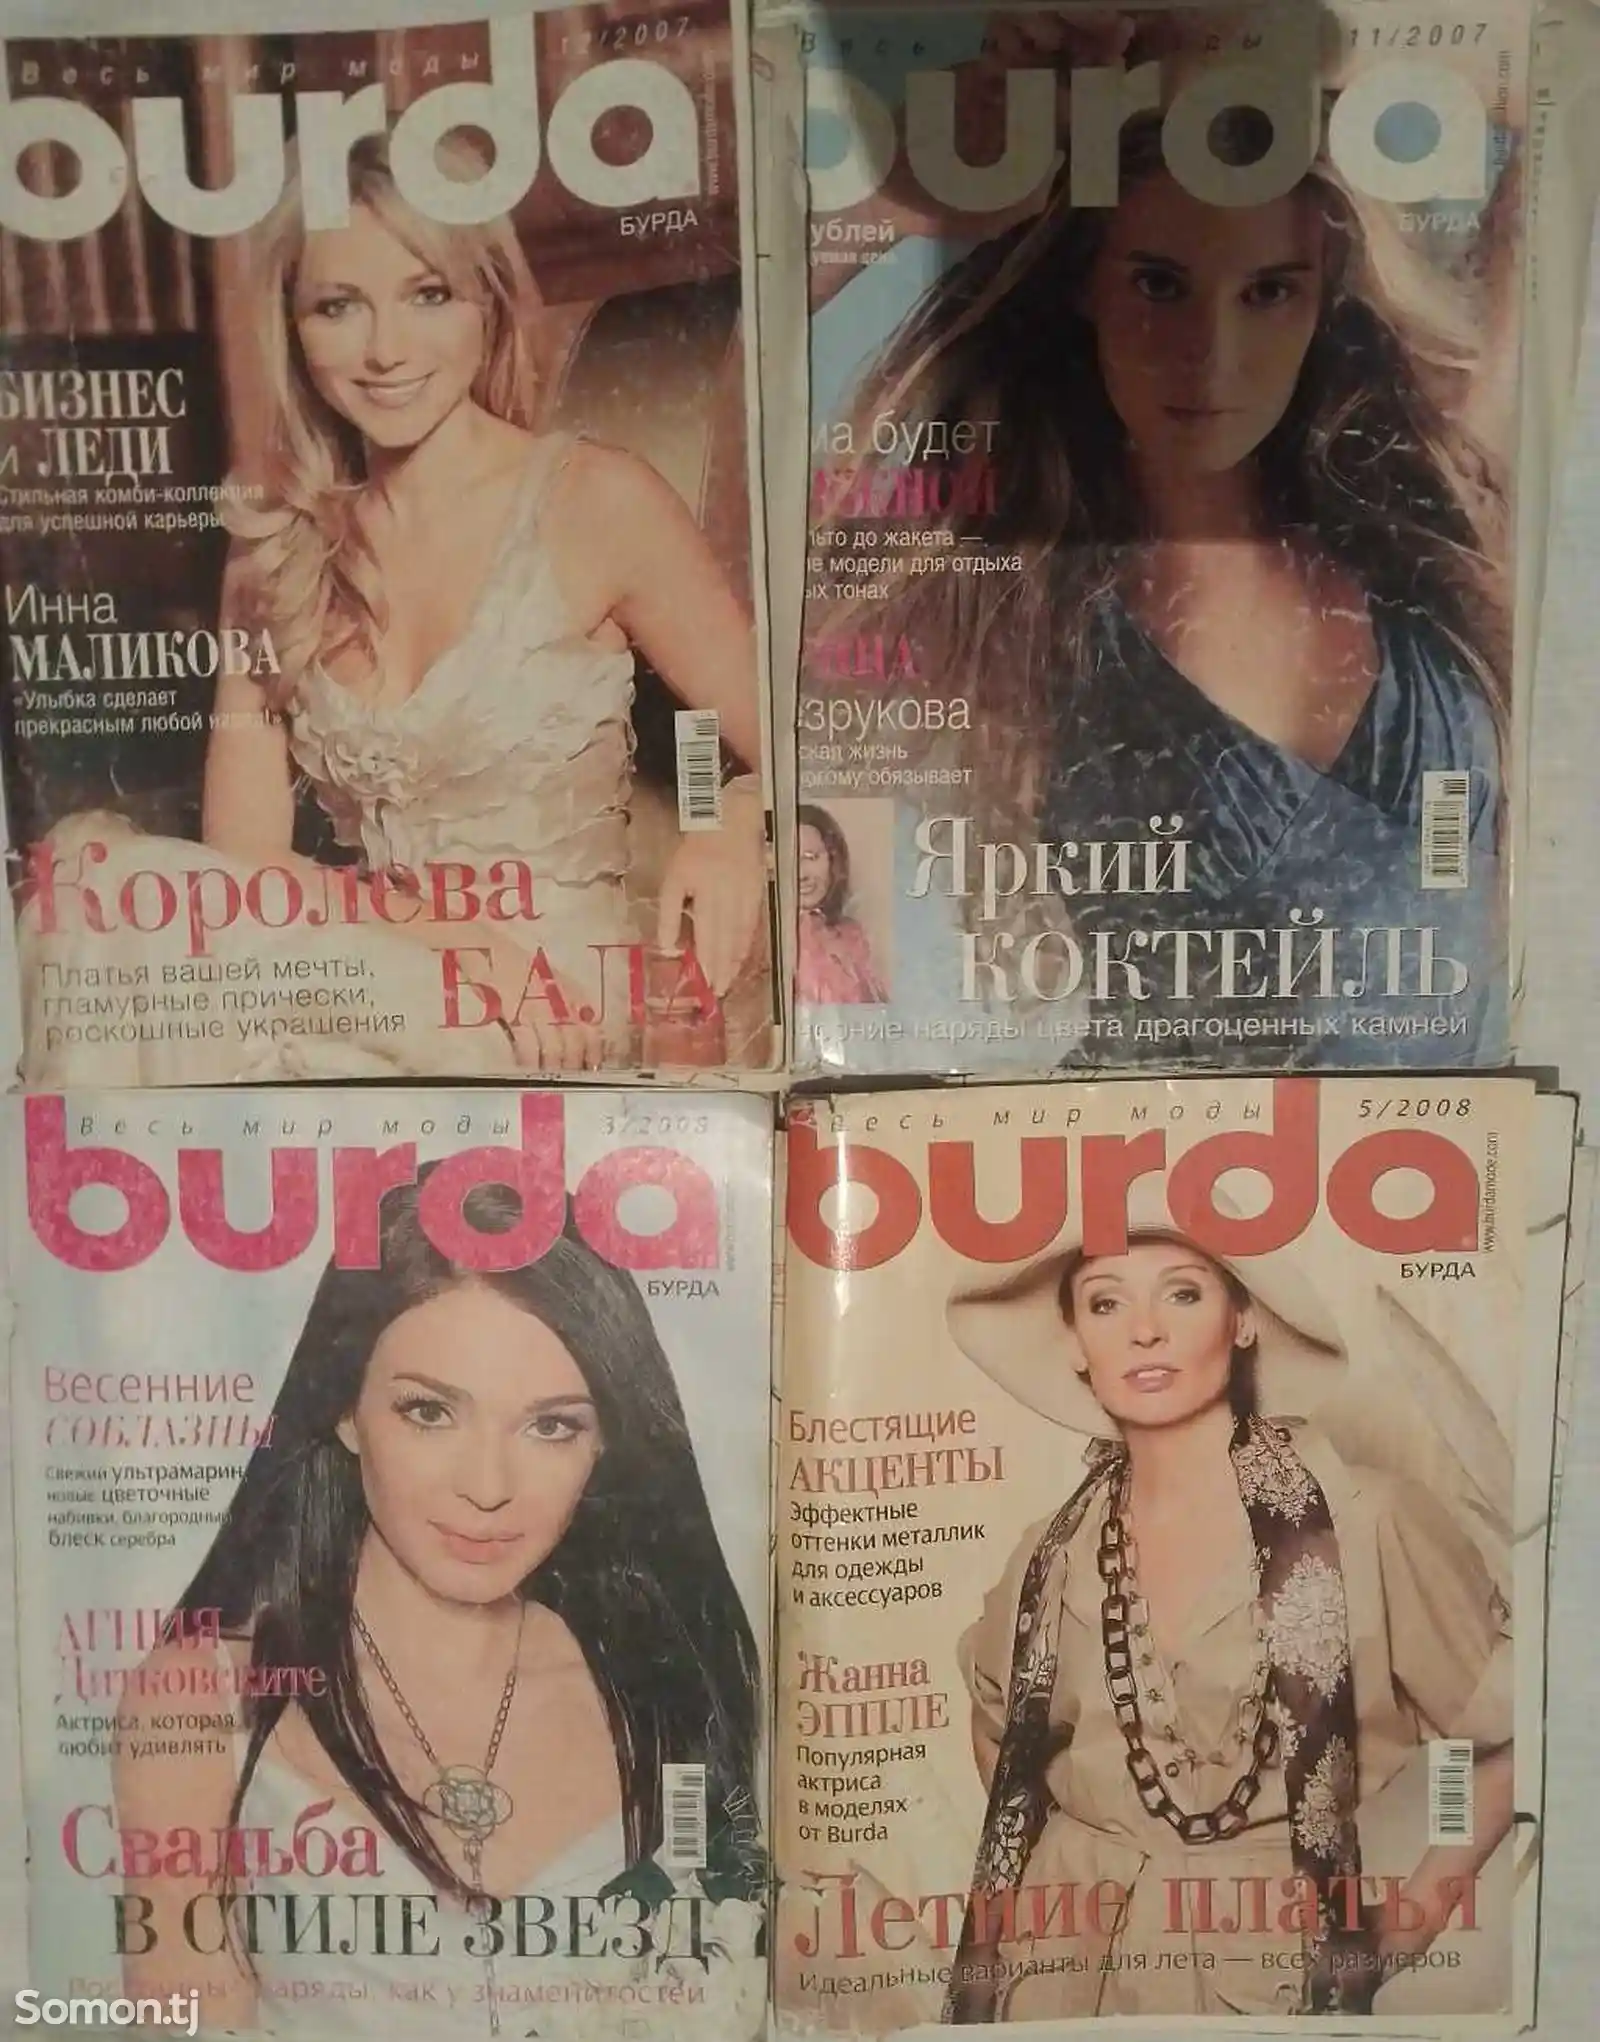 Журнал burda-3